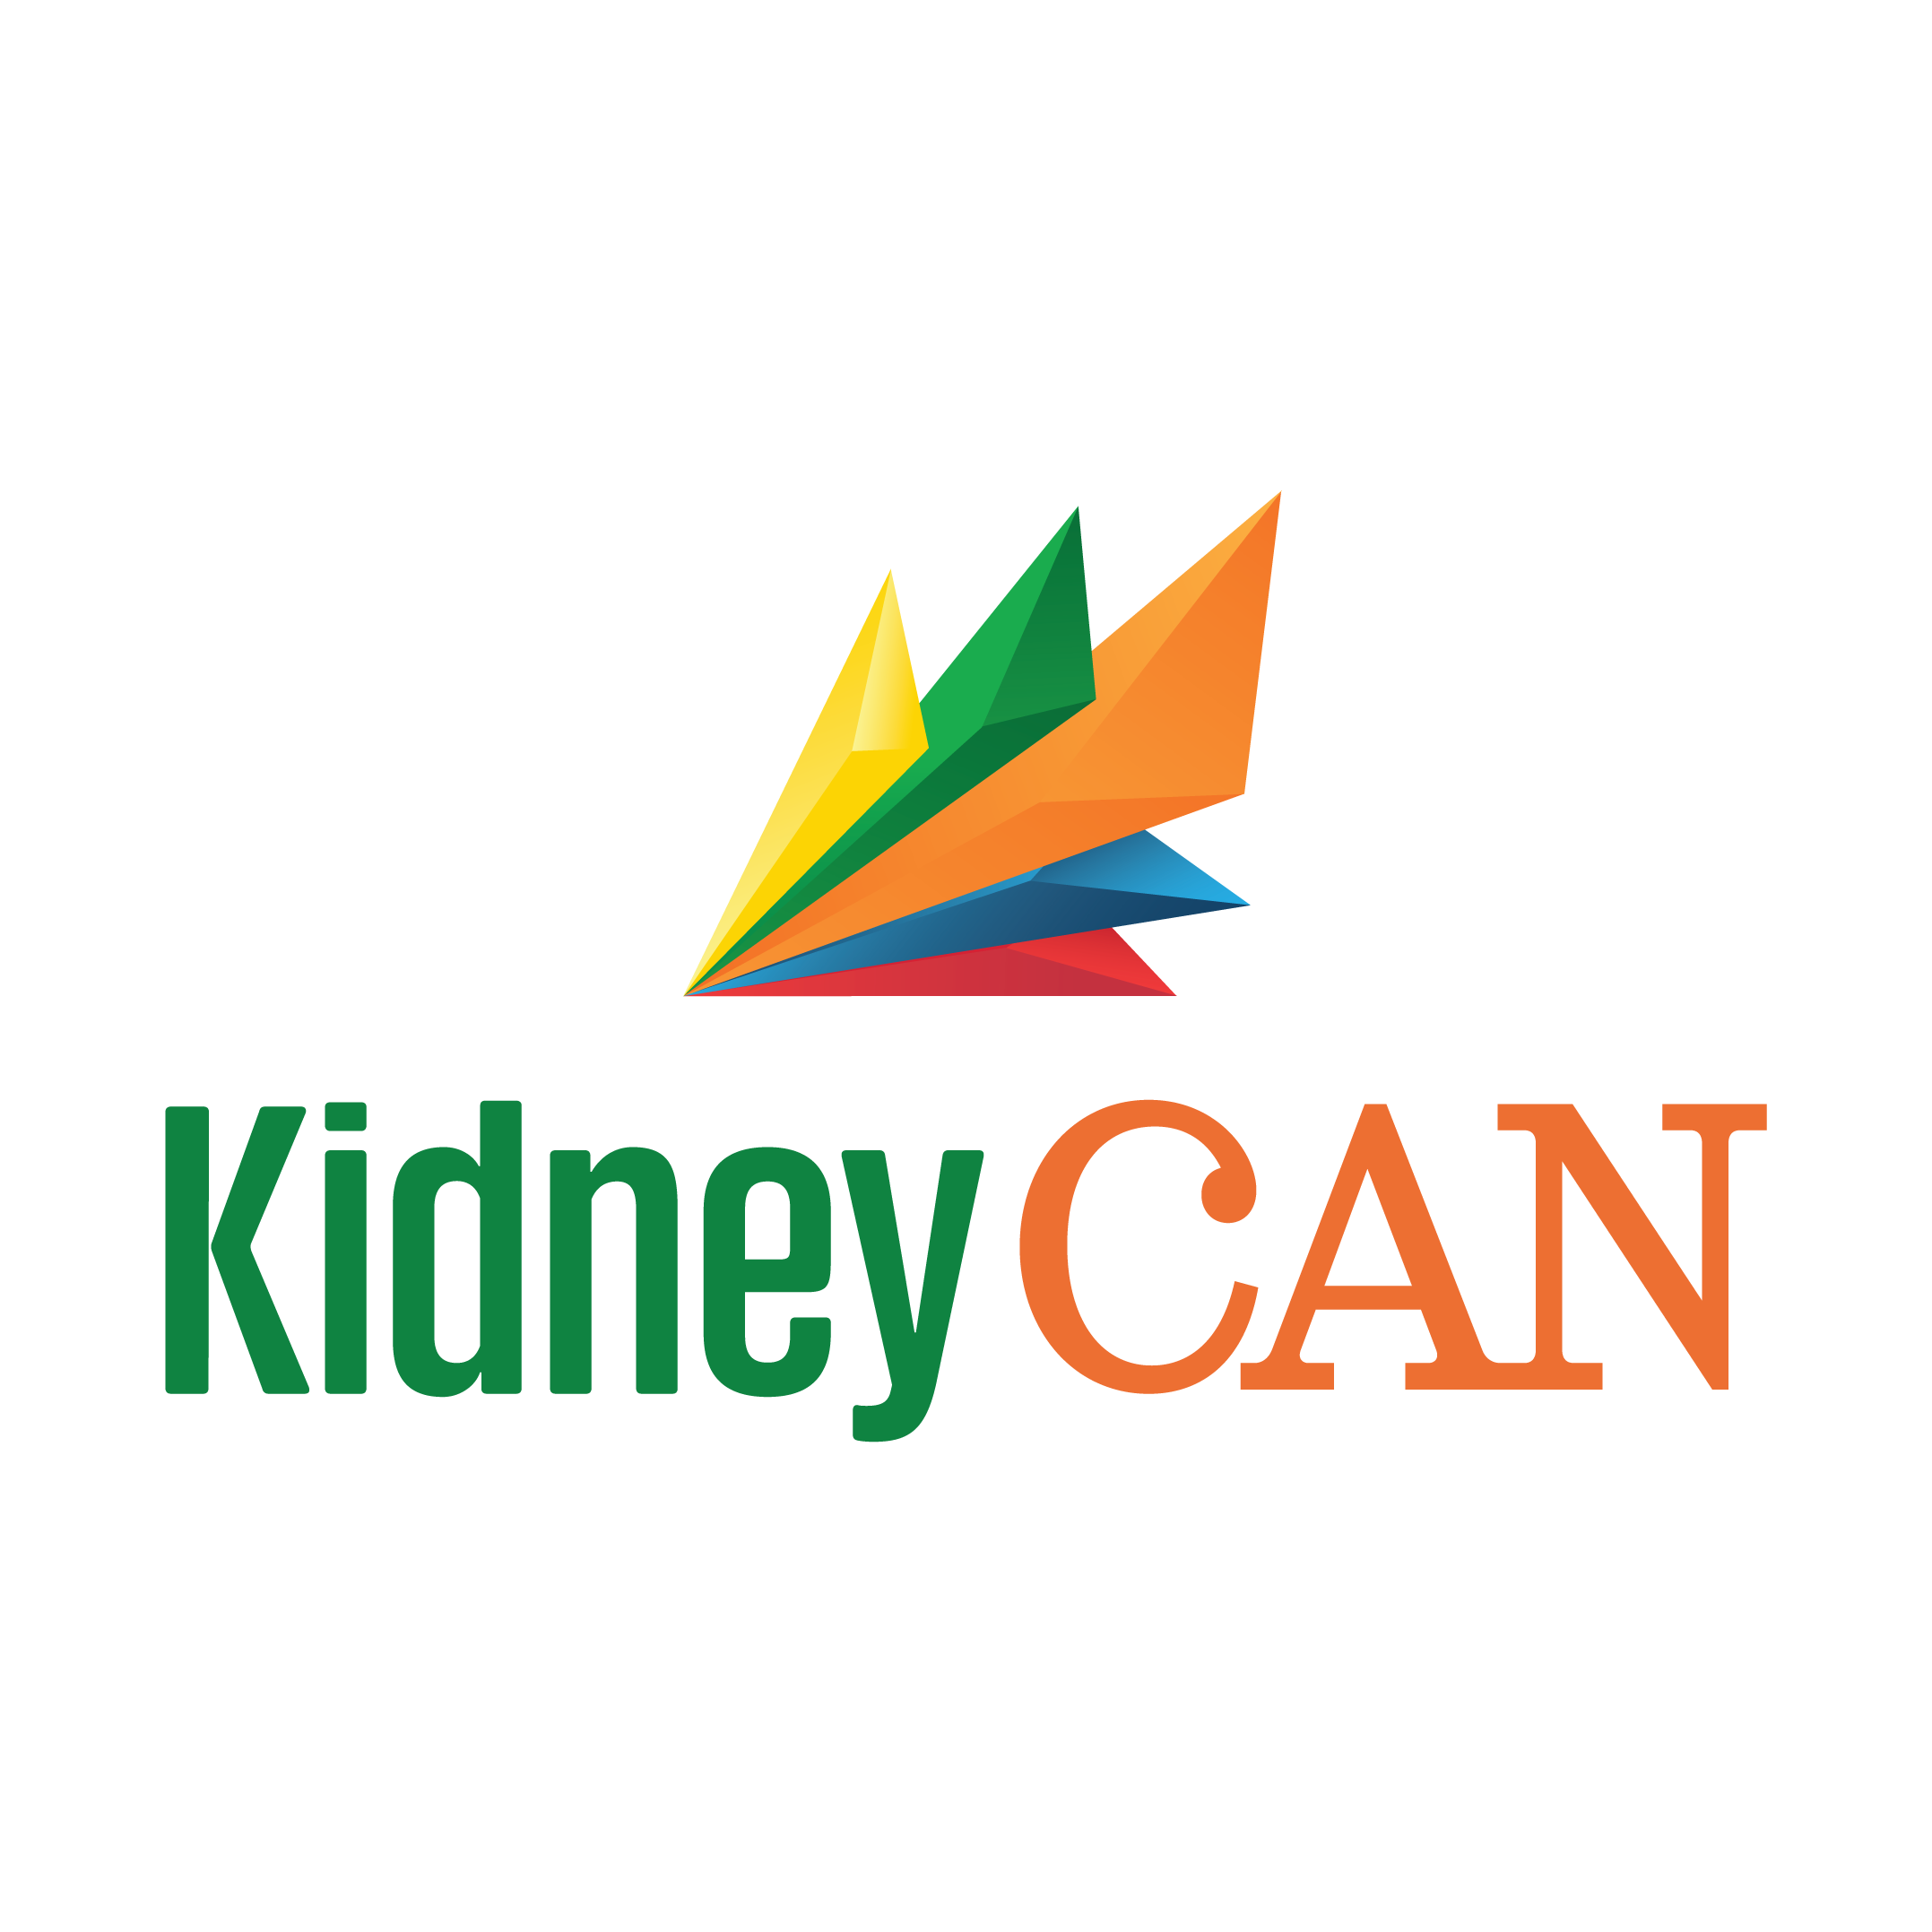 KidneyCAN